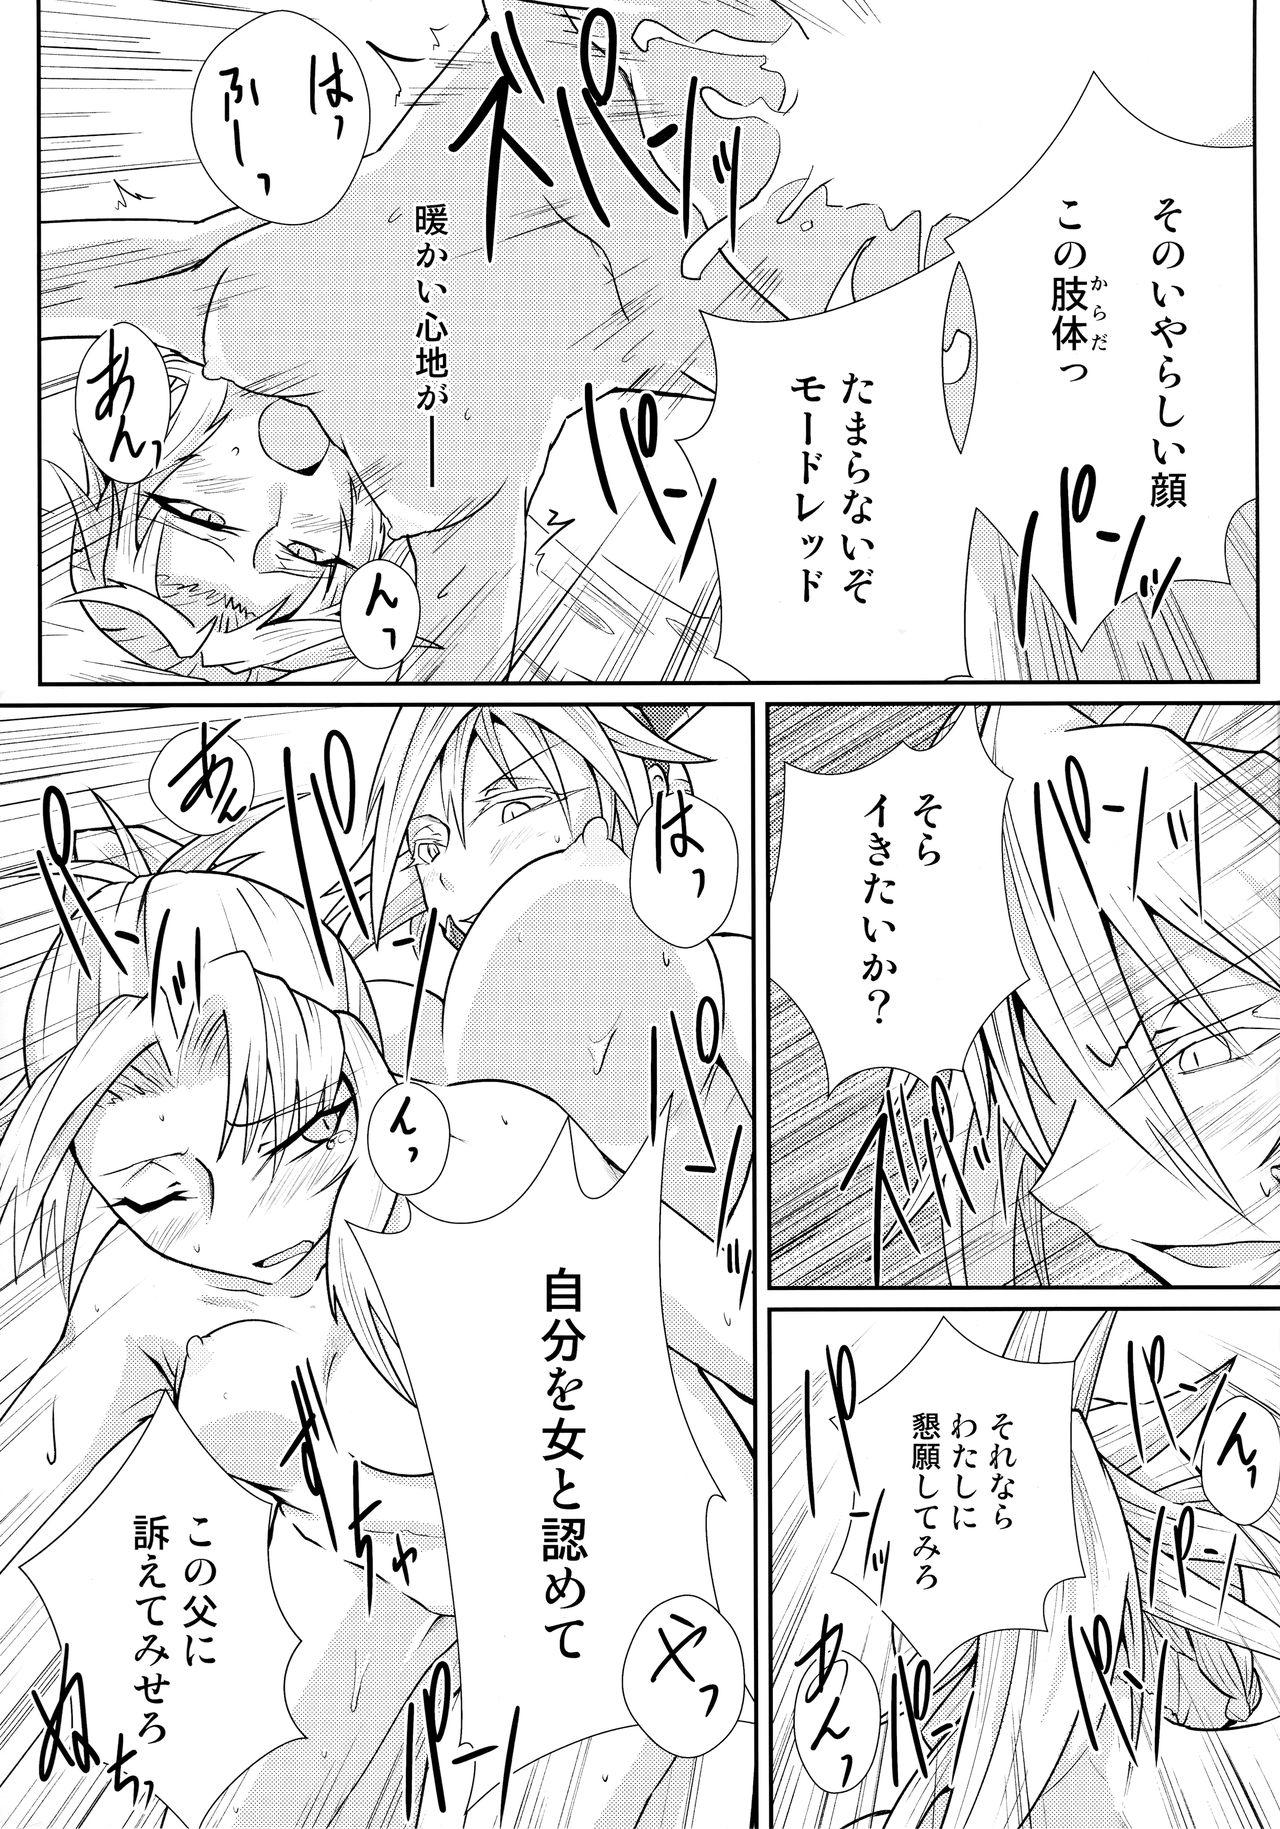 Mature Woman Watashi no Kawaii Mordred - Fate grand order Blows - Page 8